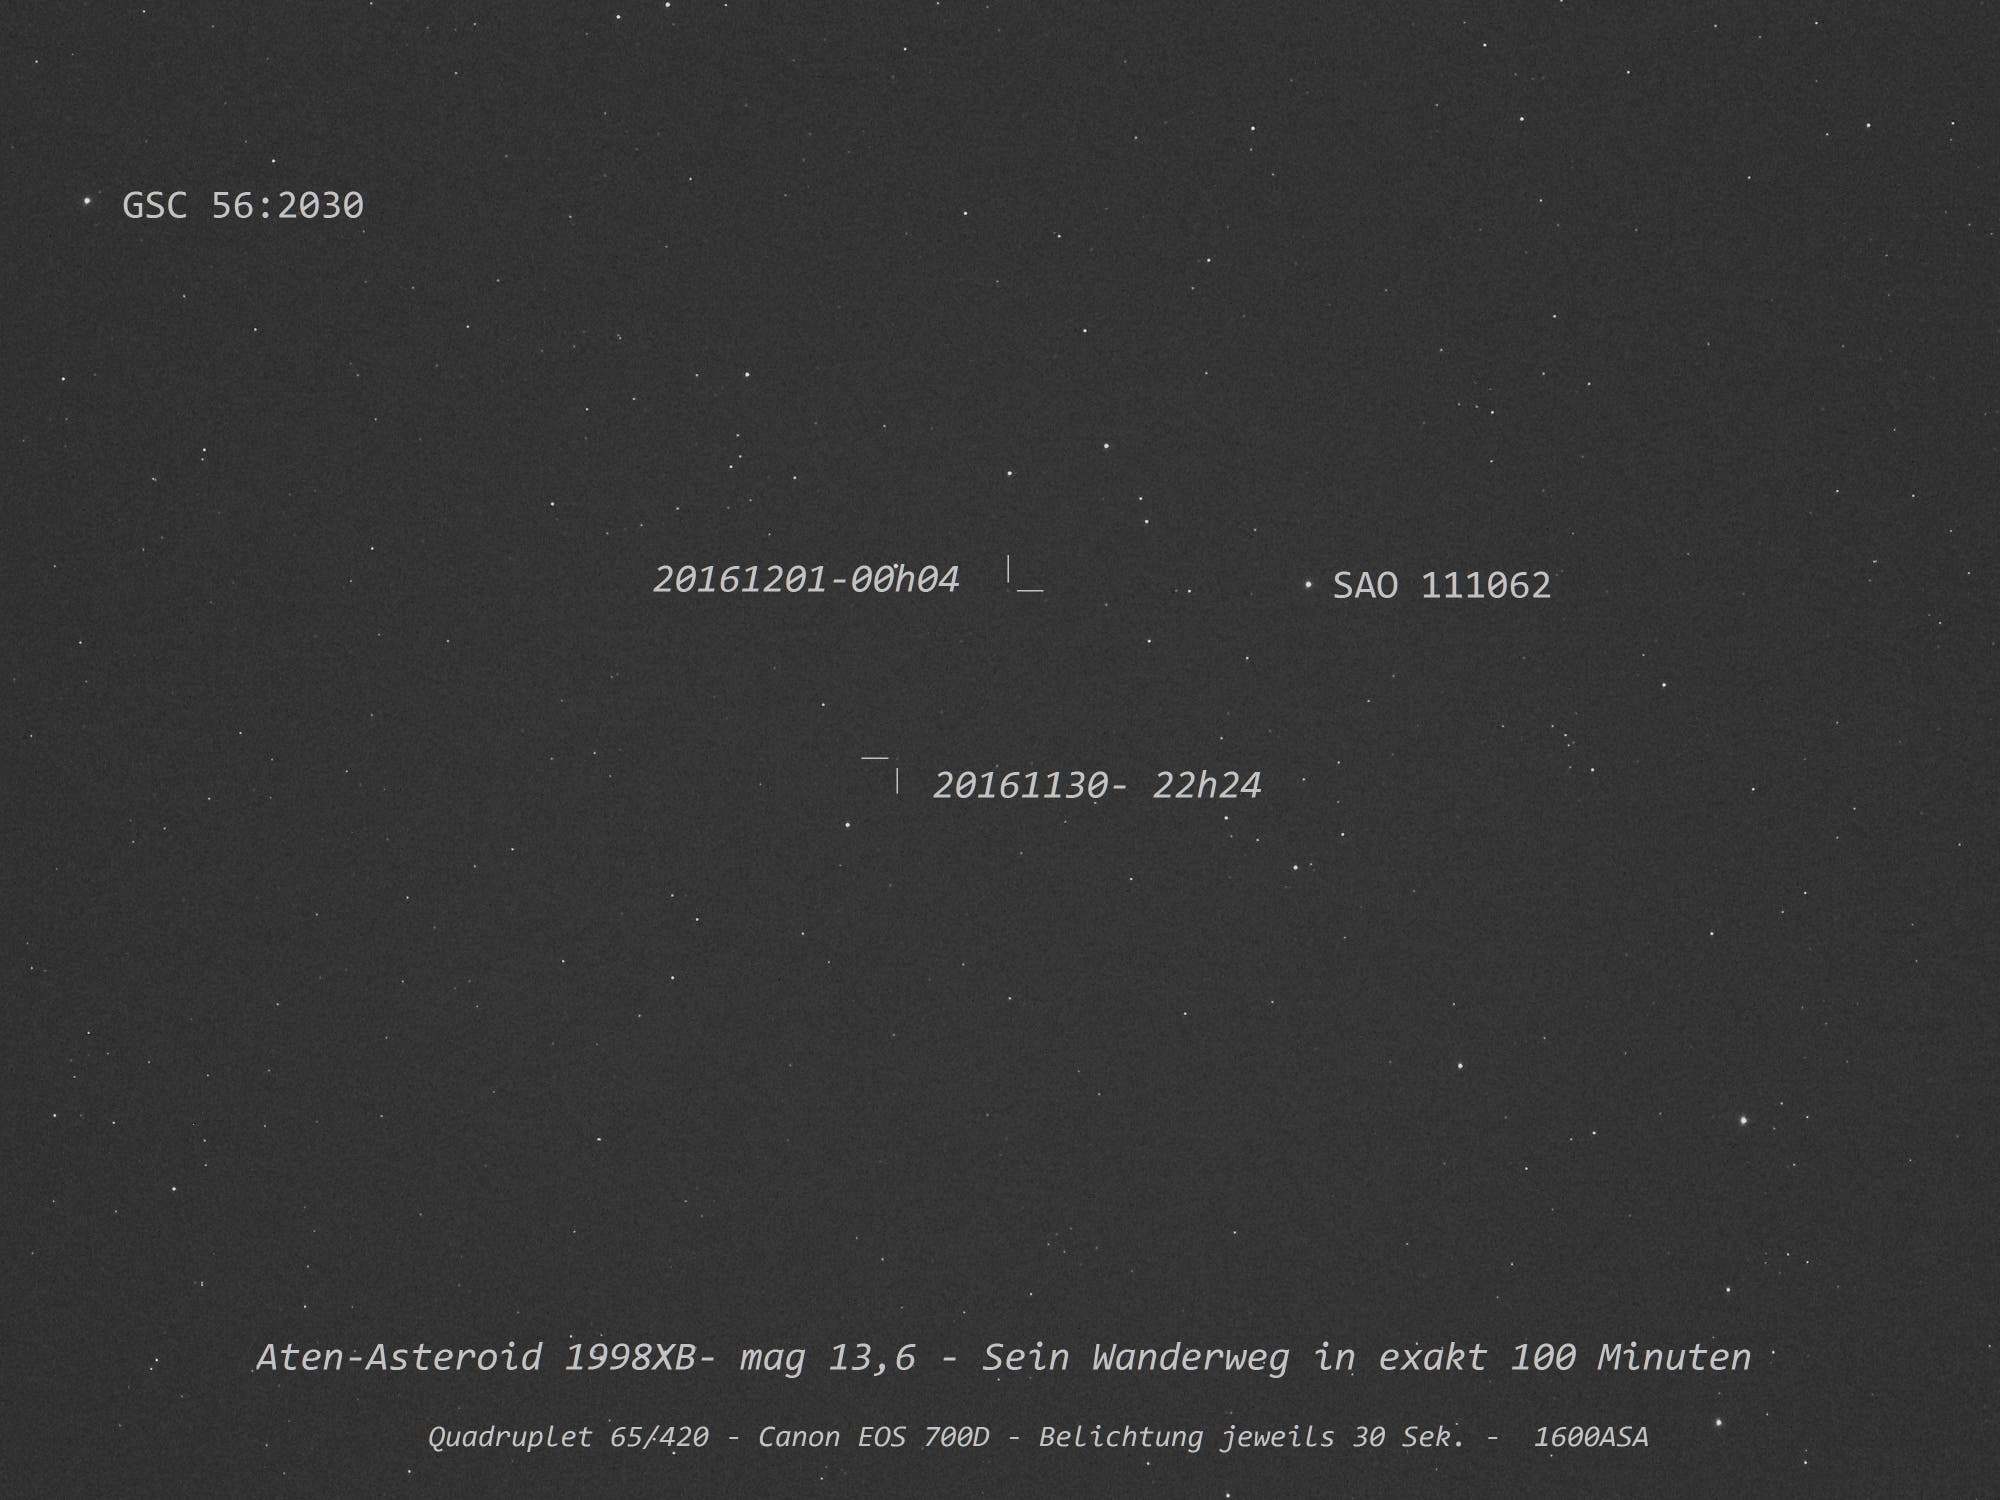 Aten-Asteroid 1998XB